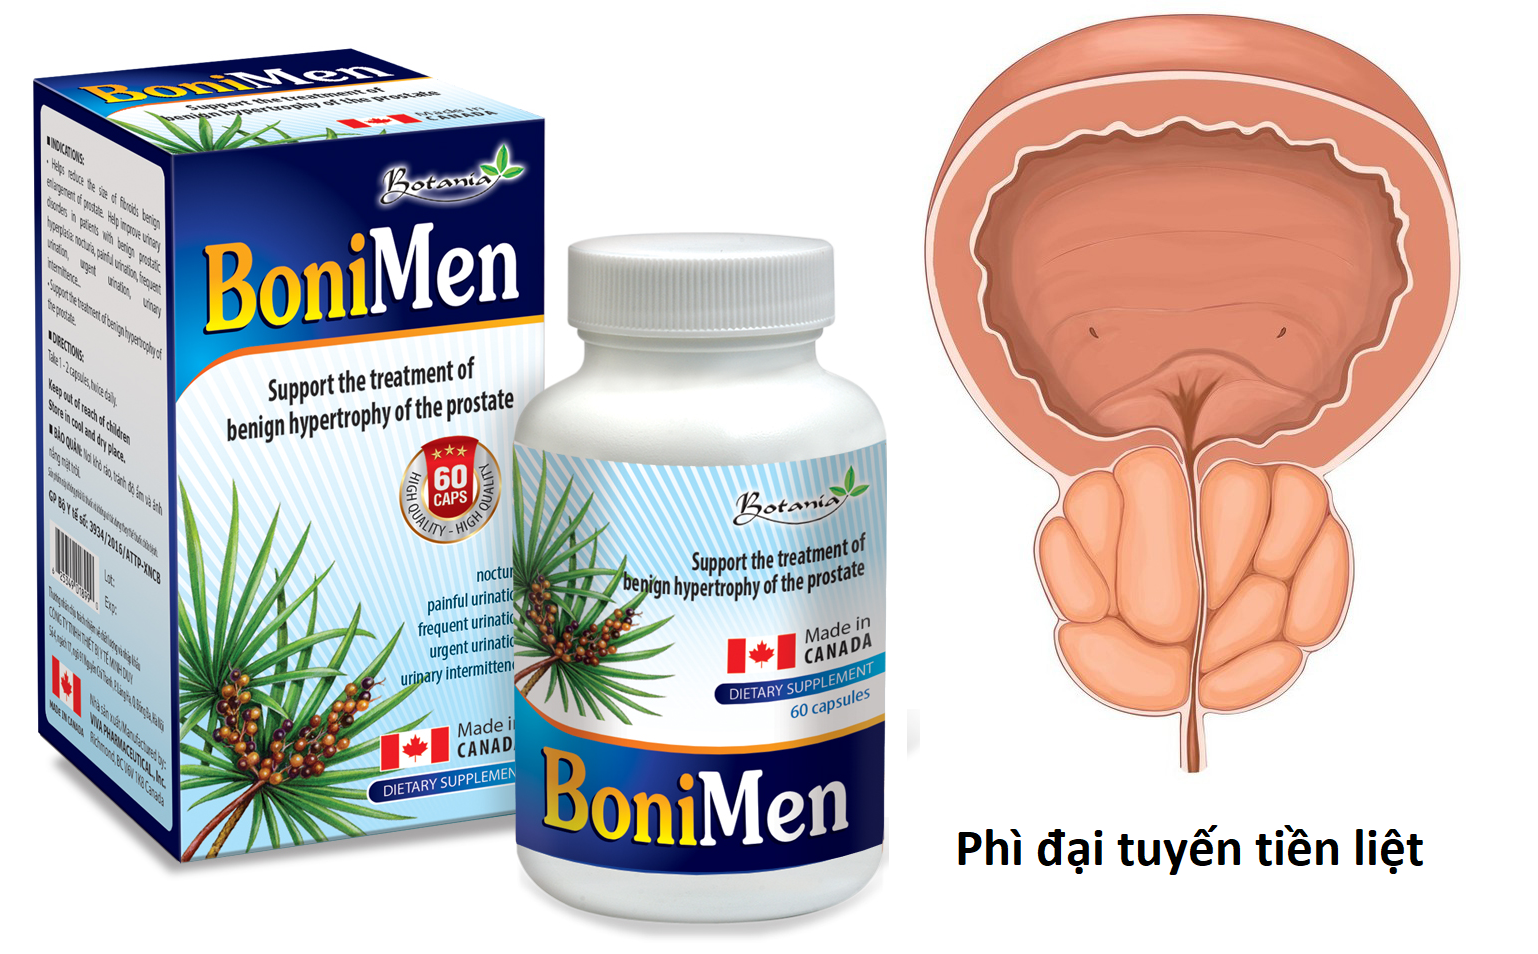 Sản phẩm BoniMen dành cho bệnh phì đại tuyến tiền liệt